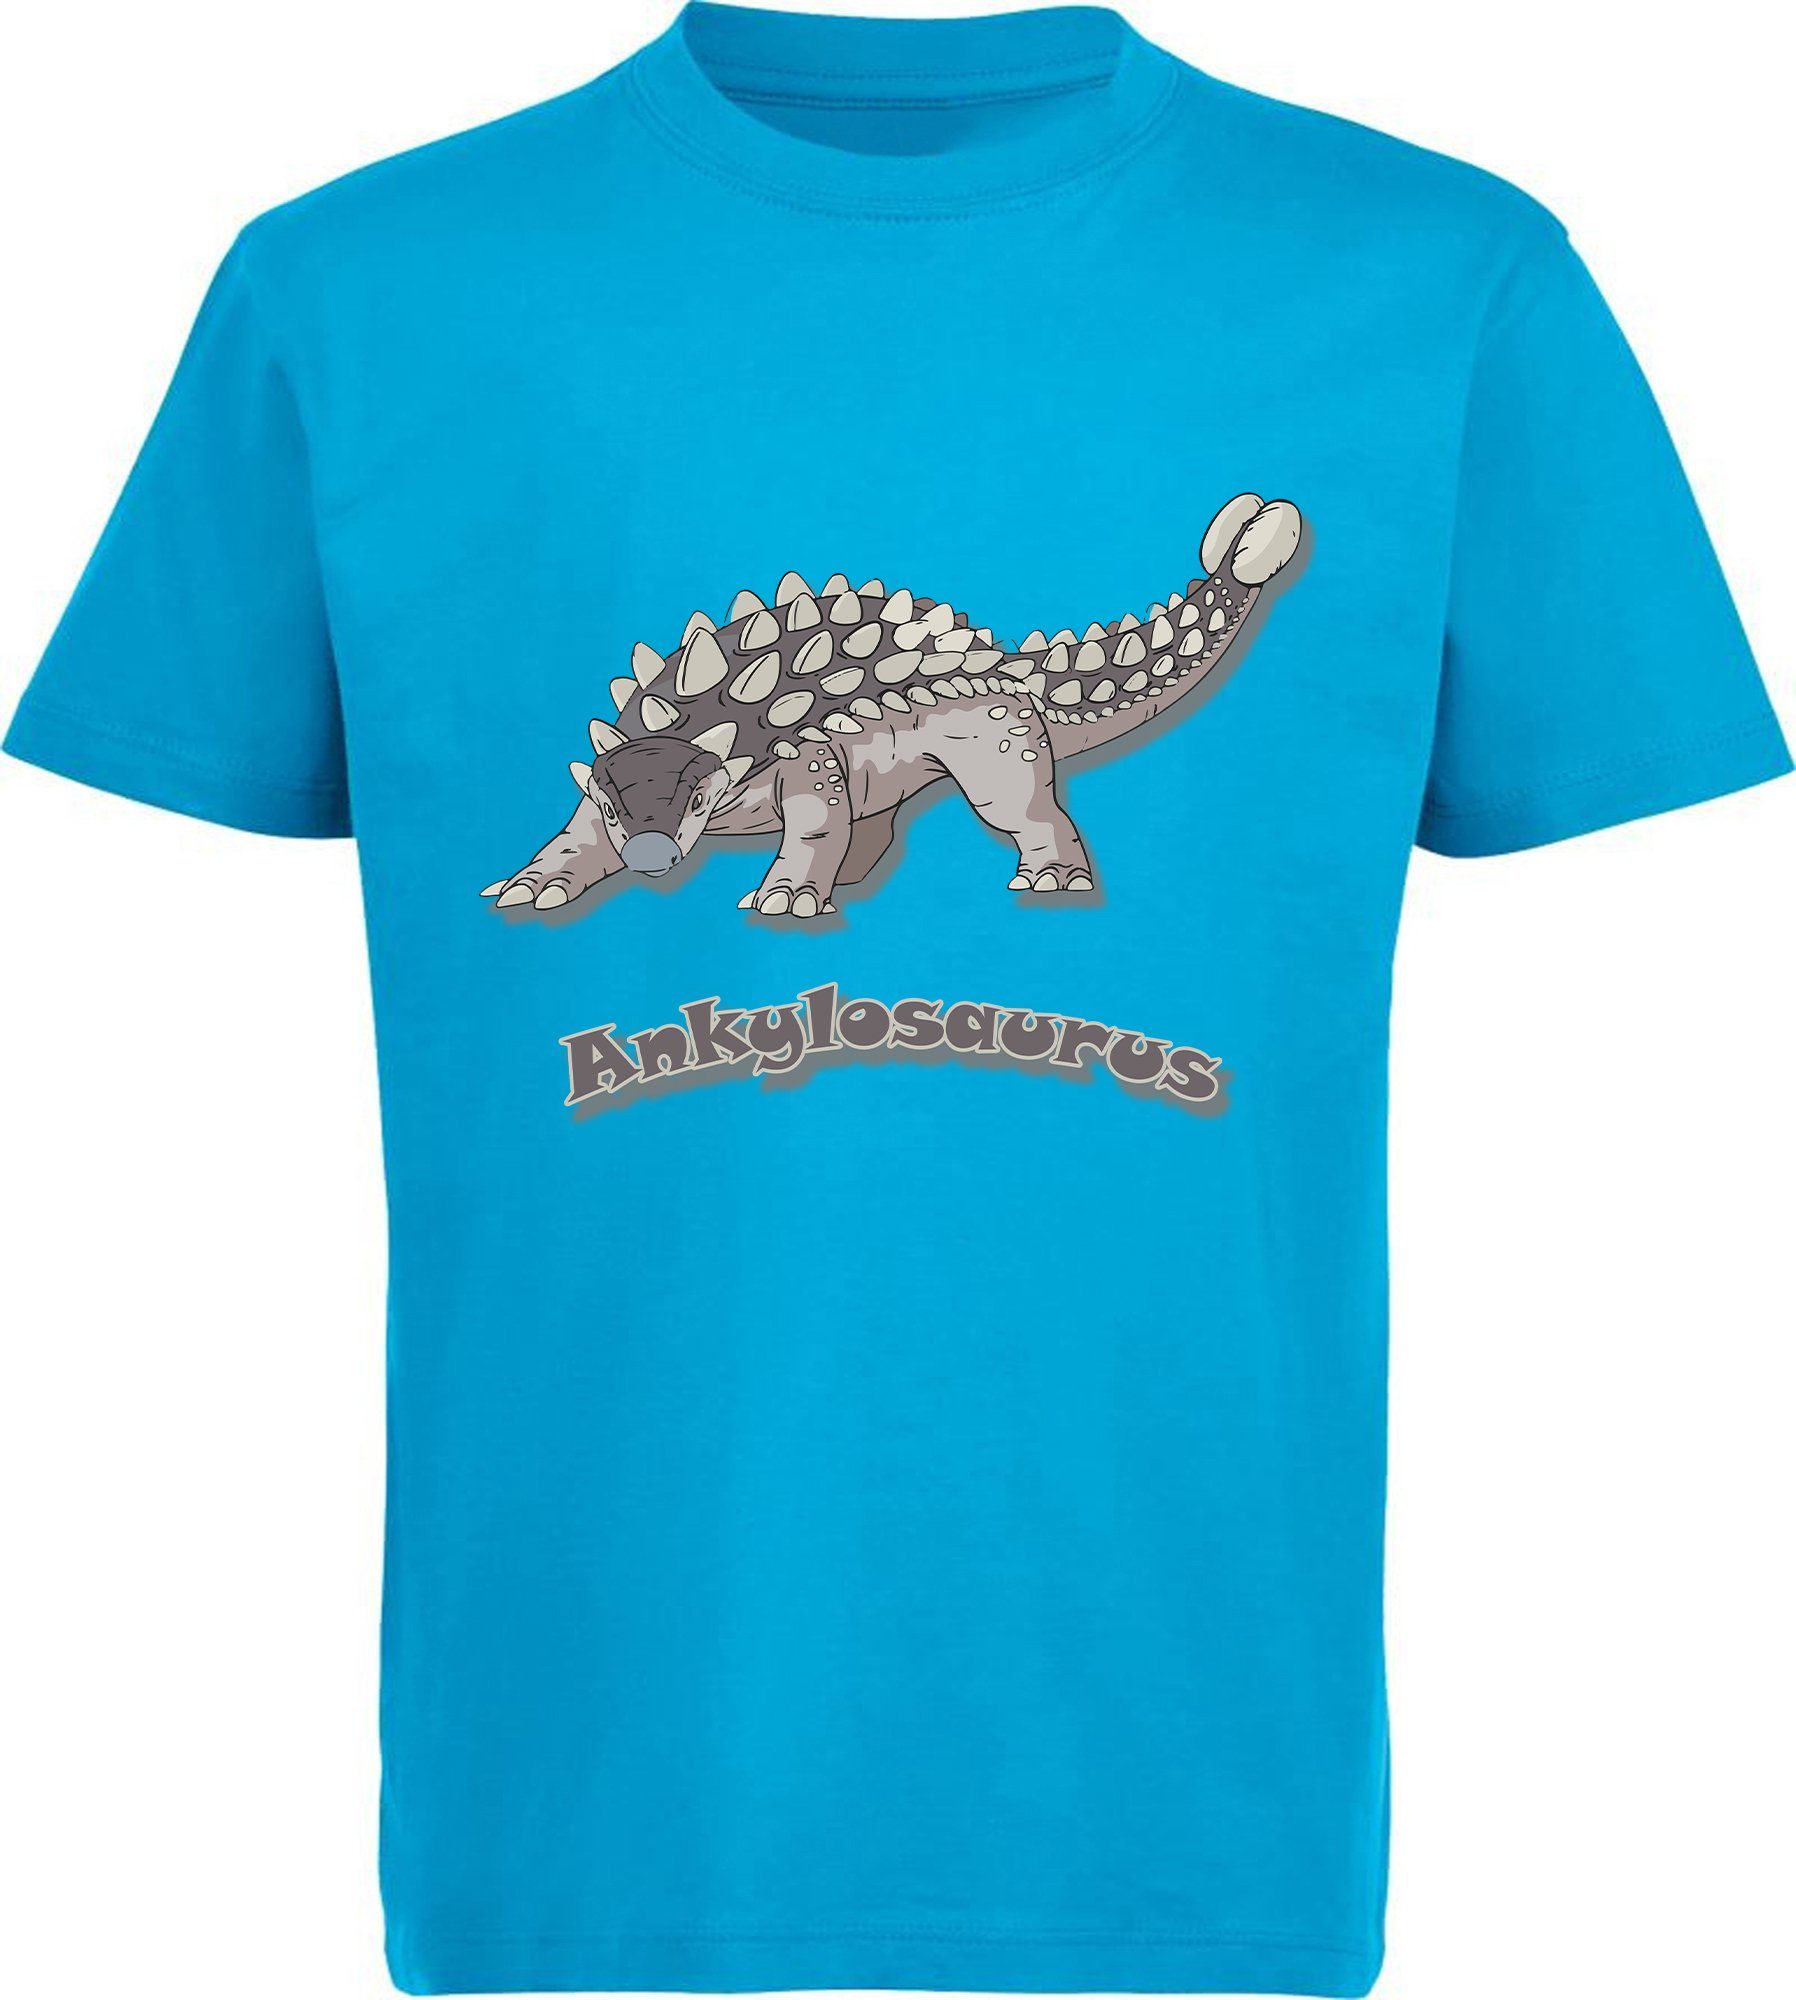 MyDesign24 Print-Shirt aqua blau, Dino bedrucktes rot, blau 100% i63 weiß, schwarz, mit Ankylosaurus T-Shirt Aufdruck, mit Baumwolle Kinder